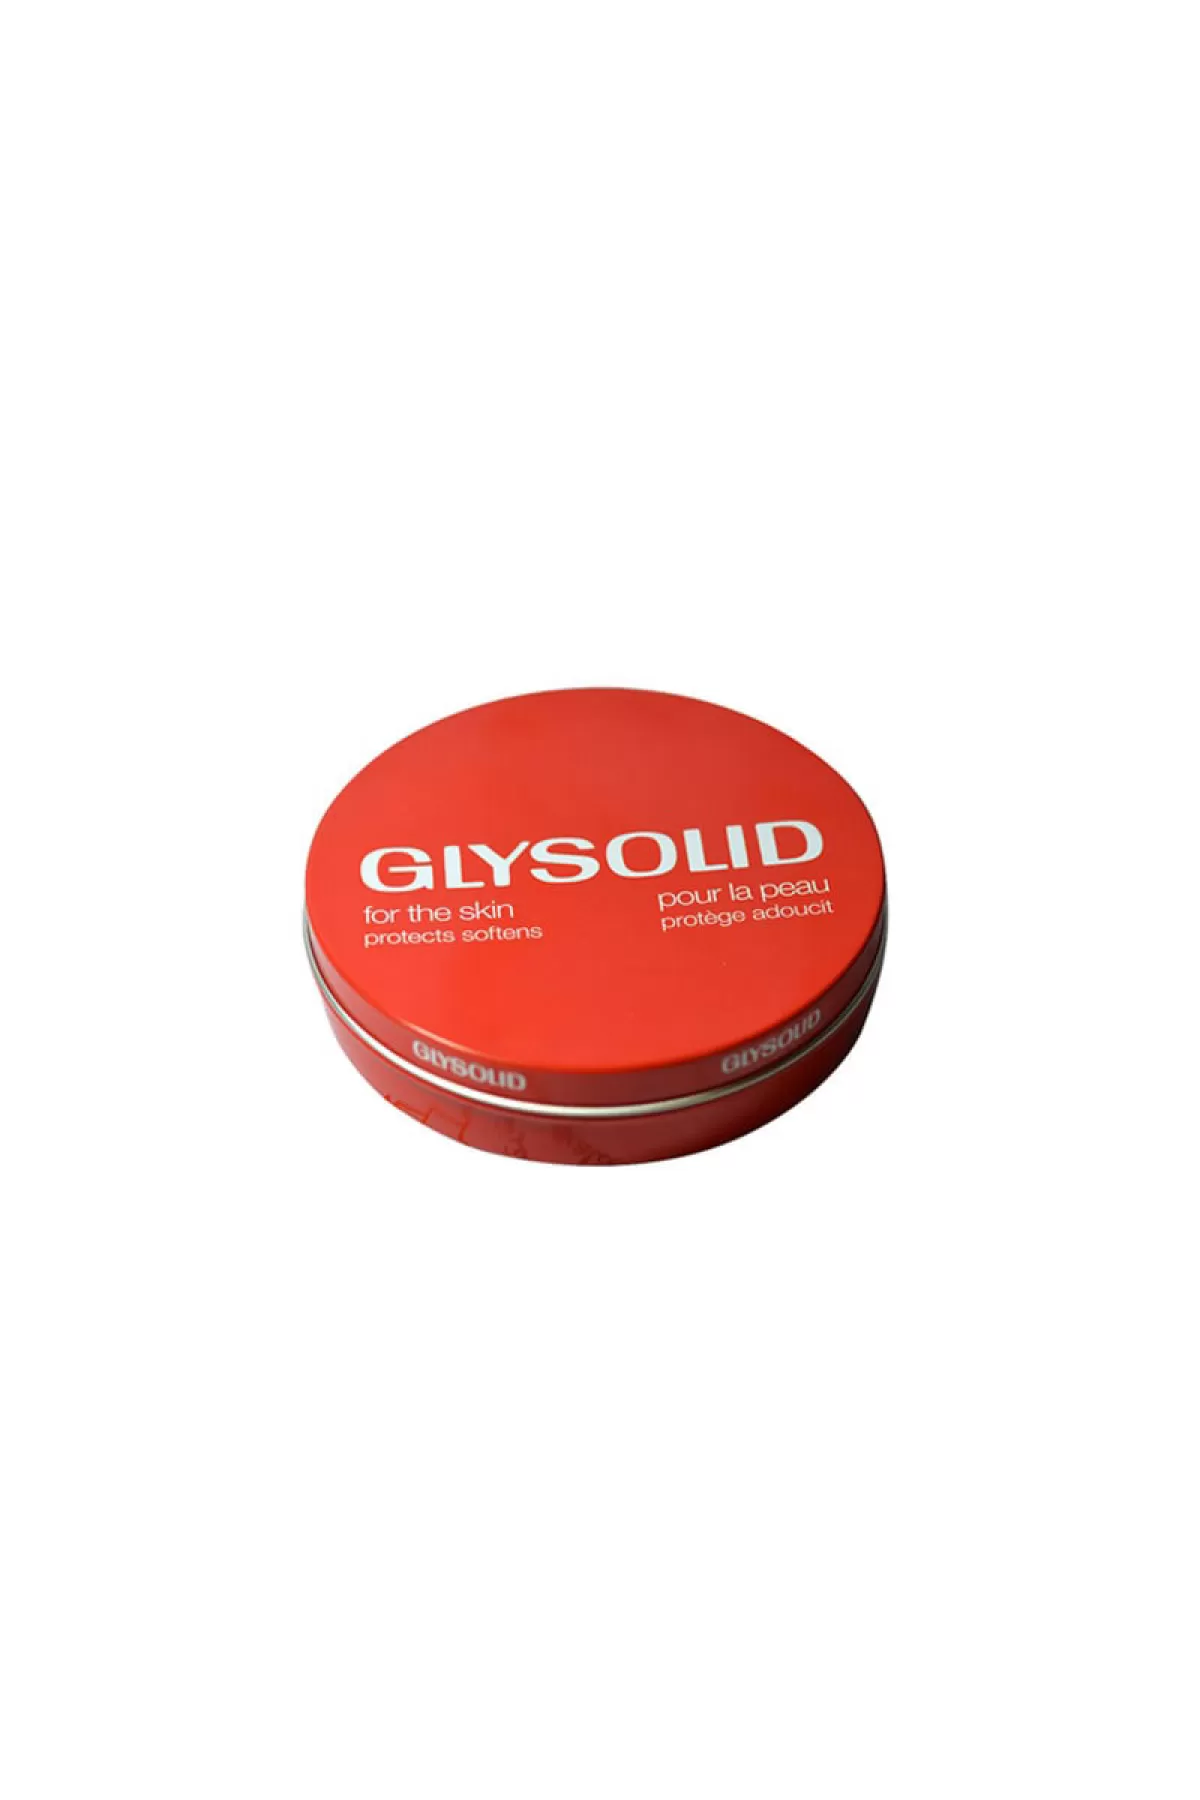 نرم کننده و مرطوب کننده پوست   حاوی گلیسیرین   محافظت کننده پوست بدن   مناسب برای انواع پوست   بدون مواد نگهدارنده گیلیسولید GLYSOLID کرم مرطوب کننده 125ml